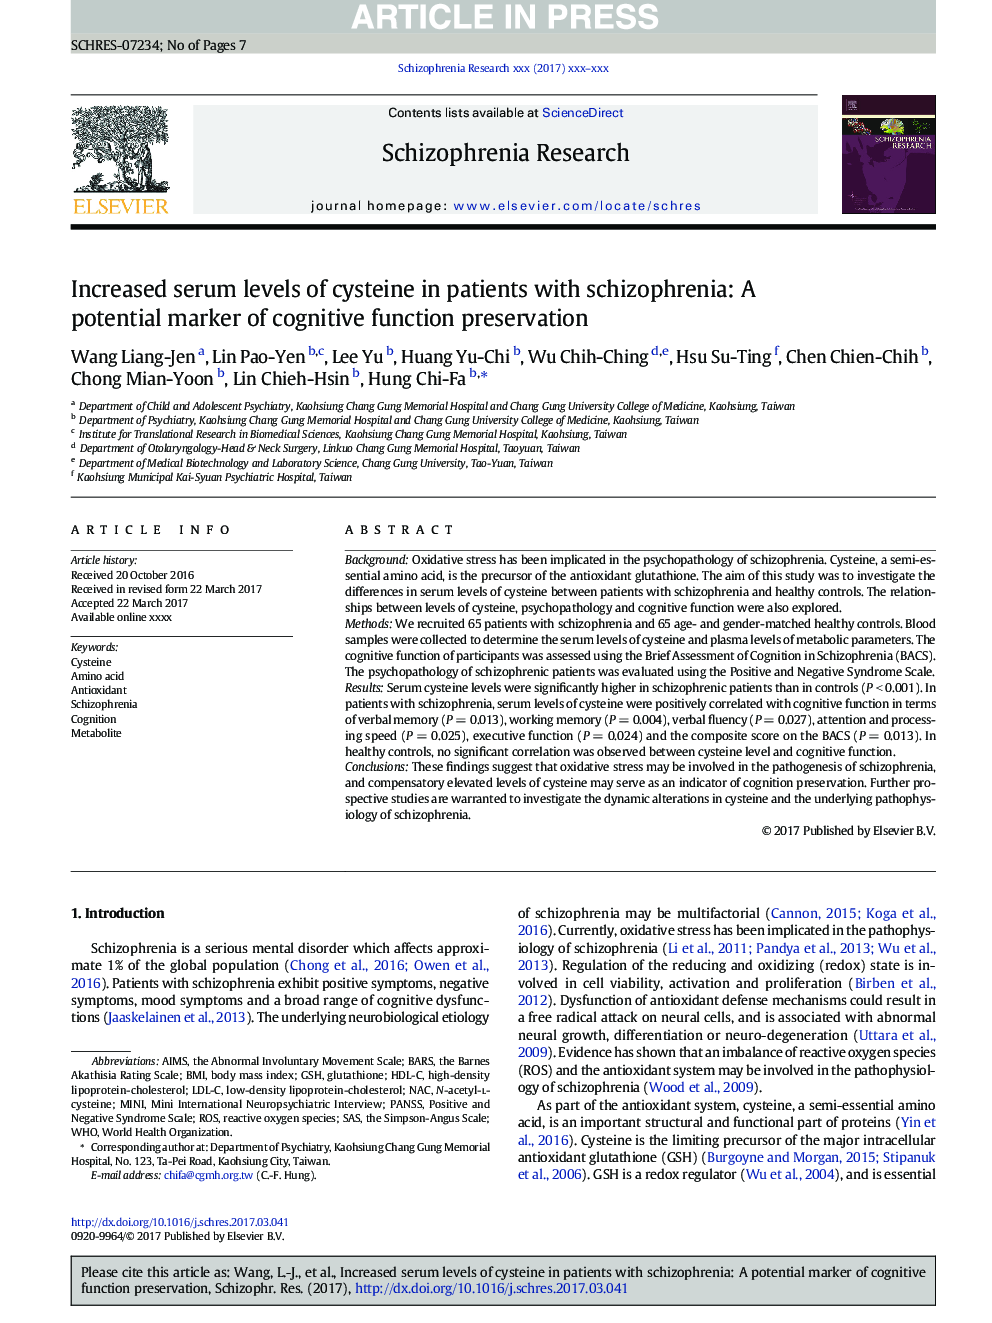 افزایش سطح سرمی سیتئین در بیماران مبتلا به اسکیزوفرنی: نشانگر بالقوه حفظ عملکرد شناختی 